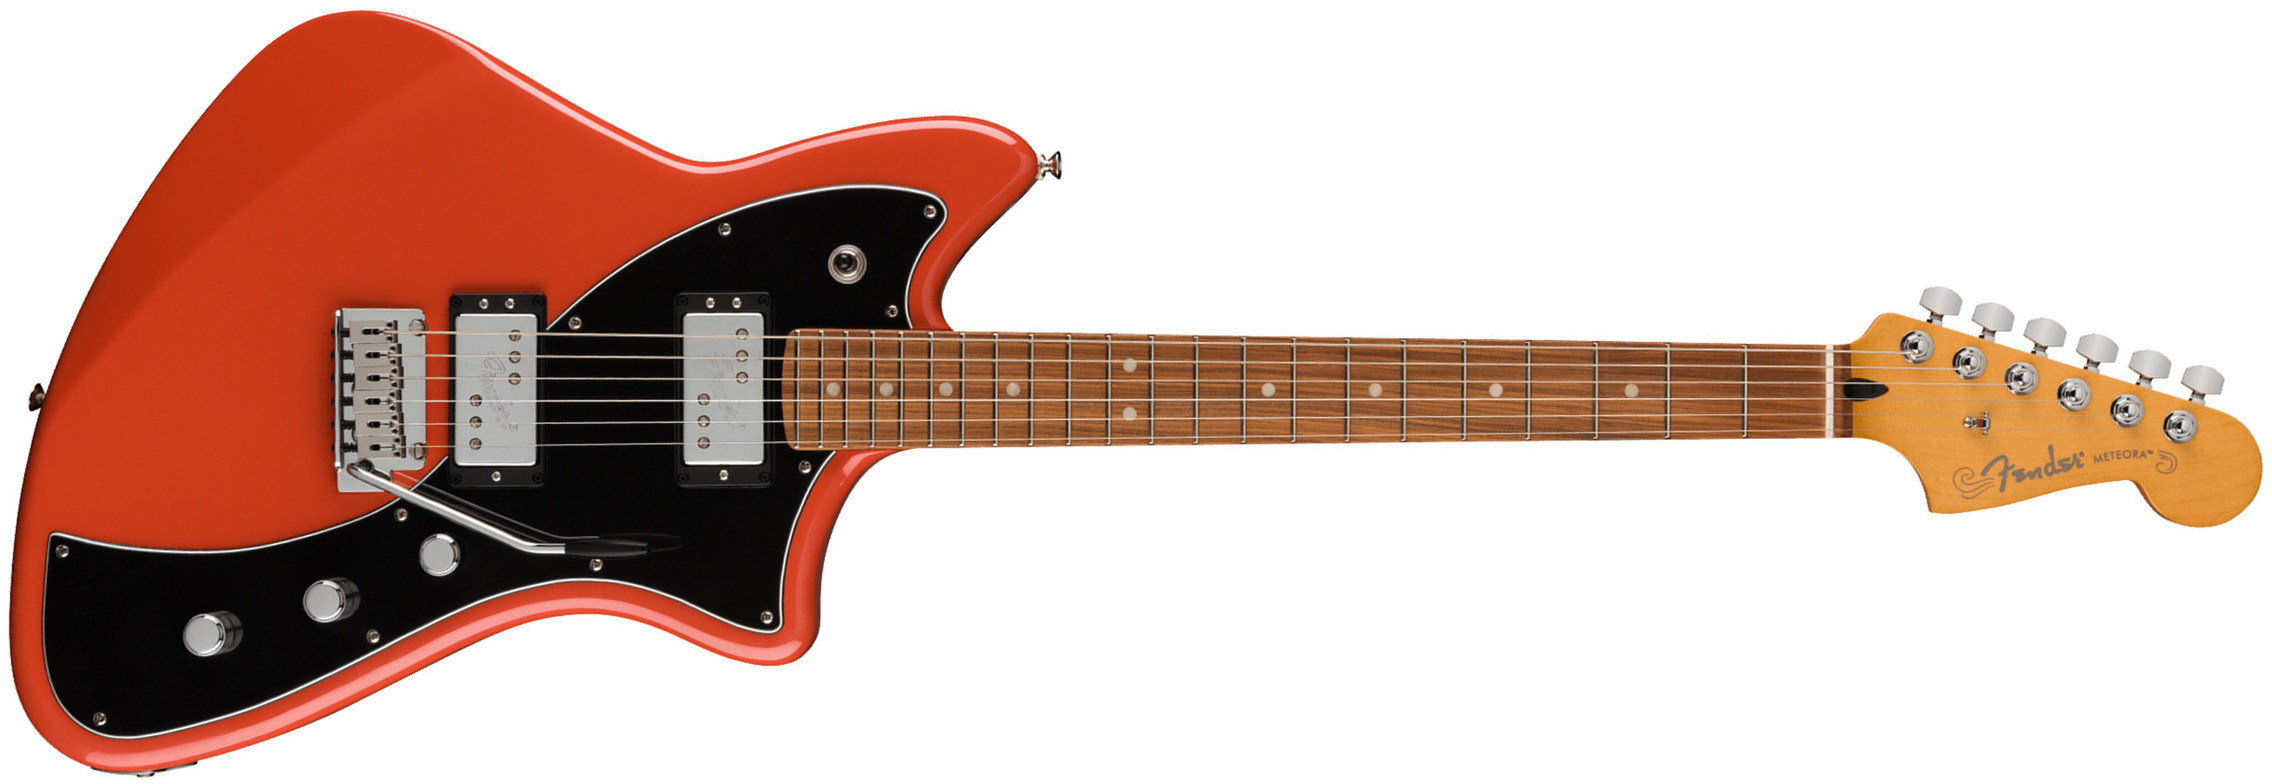 Fender Meteora Player Plus Hh Mex 2023 2s Ht Pf - Fiesta Red - Retro-Rock-E-Gitarre - Main picture